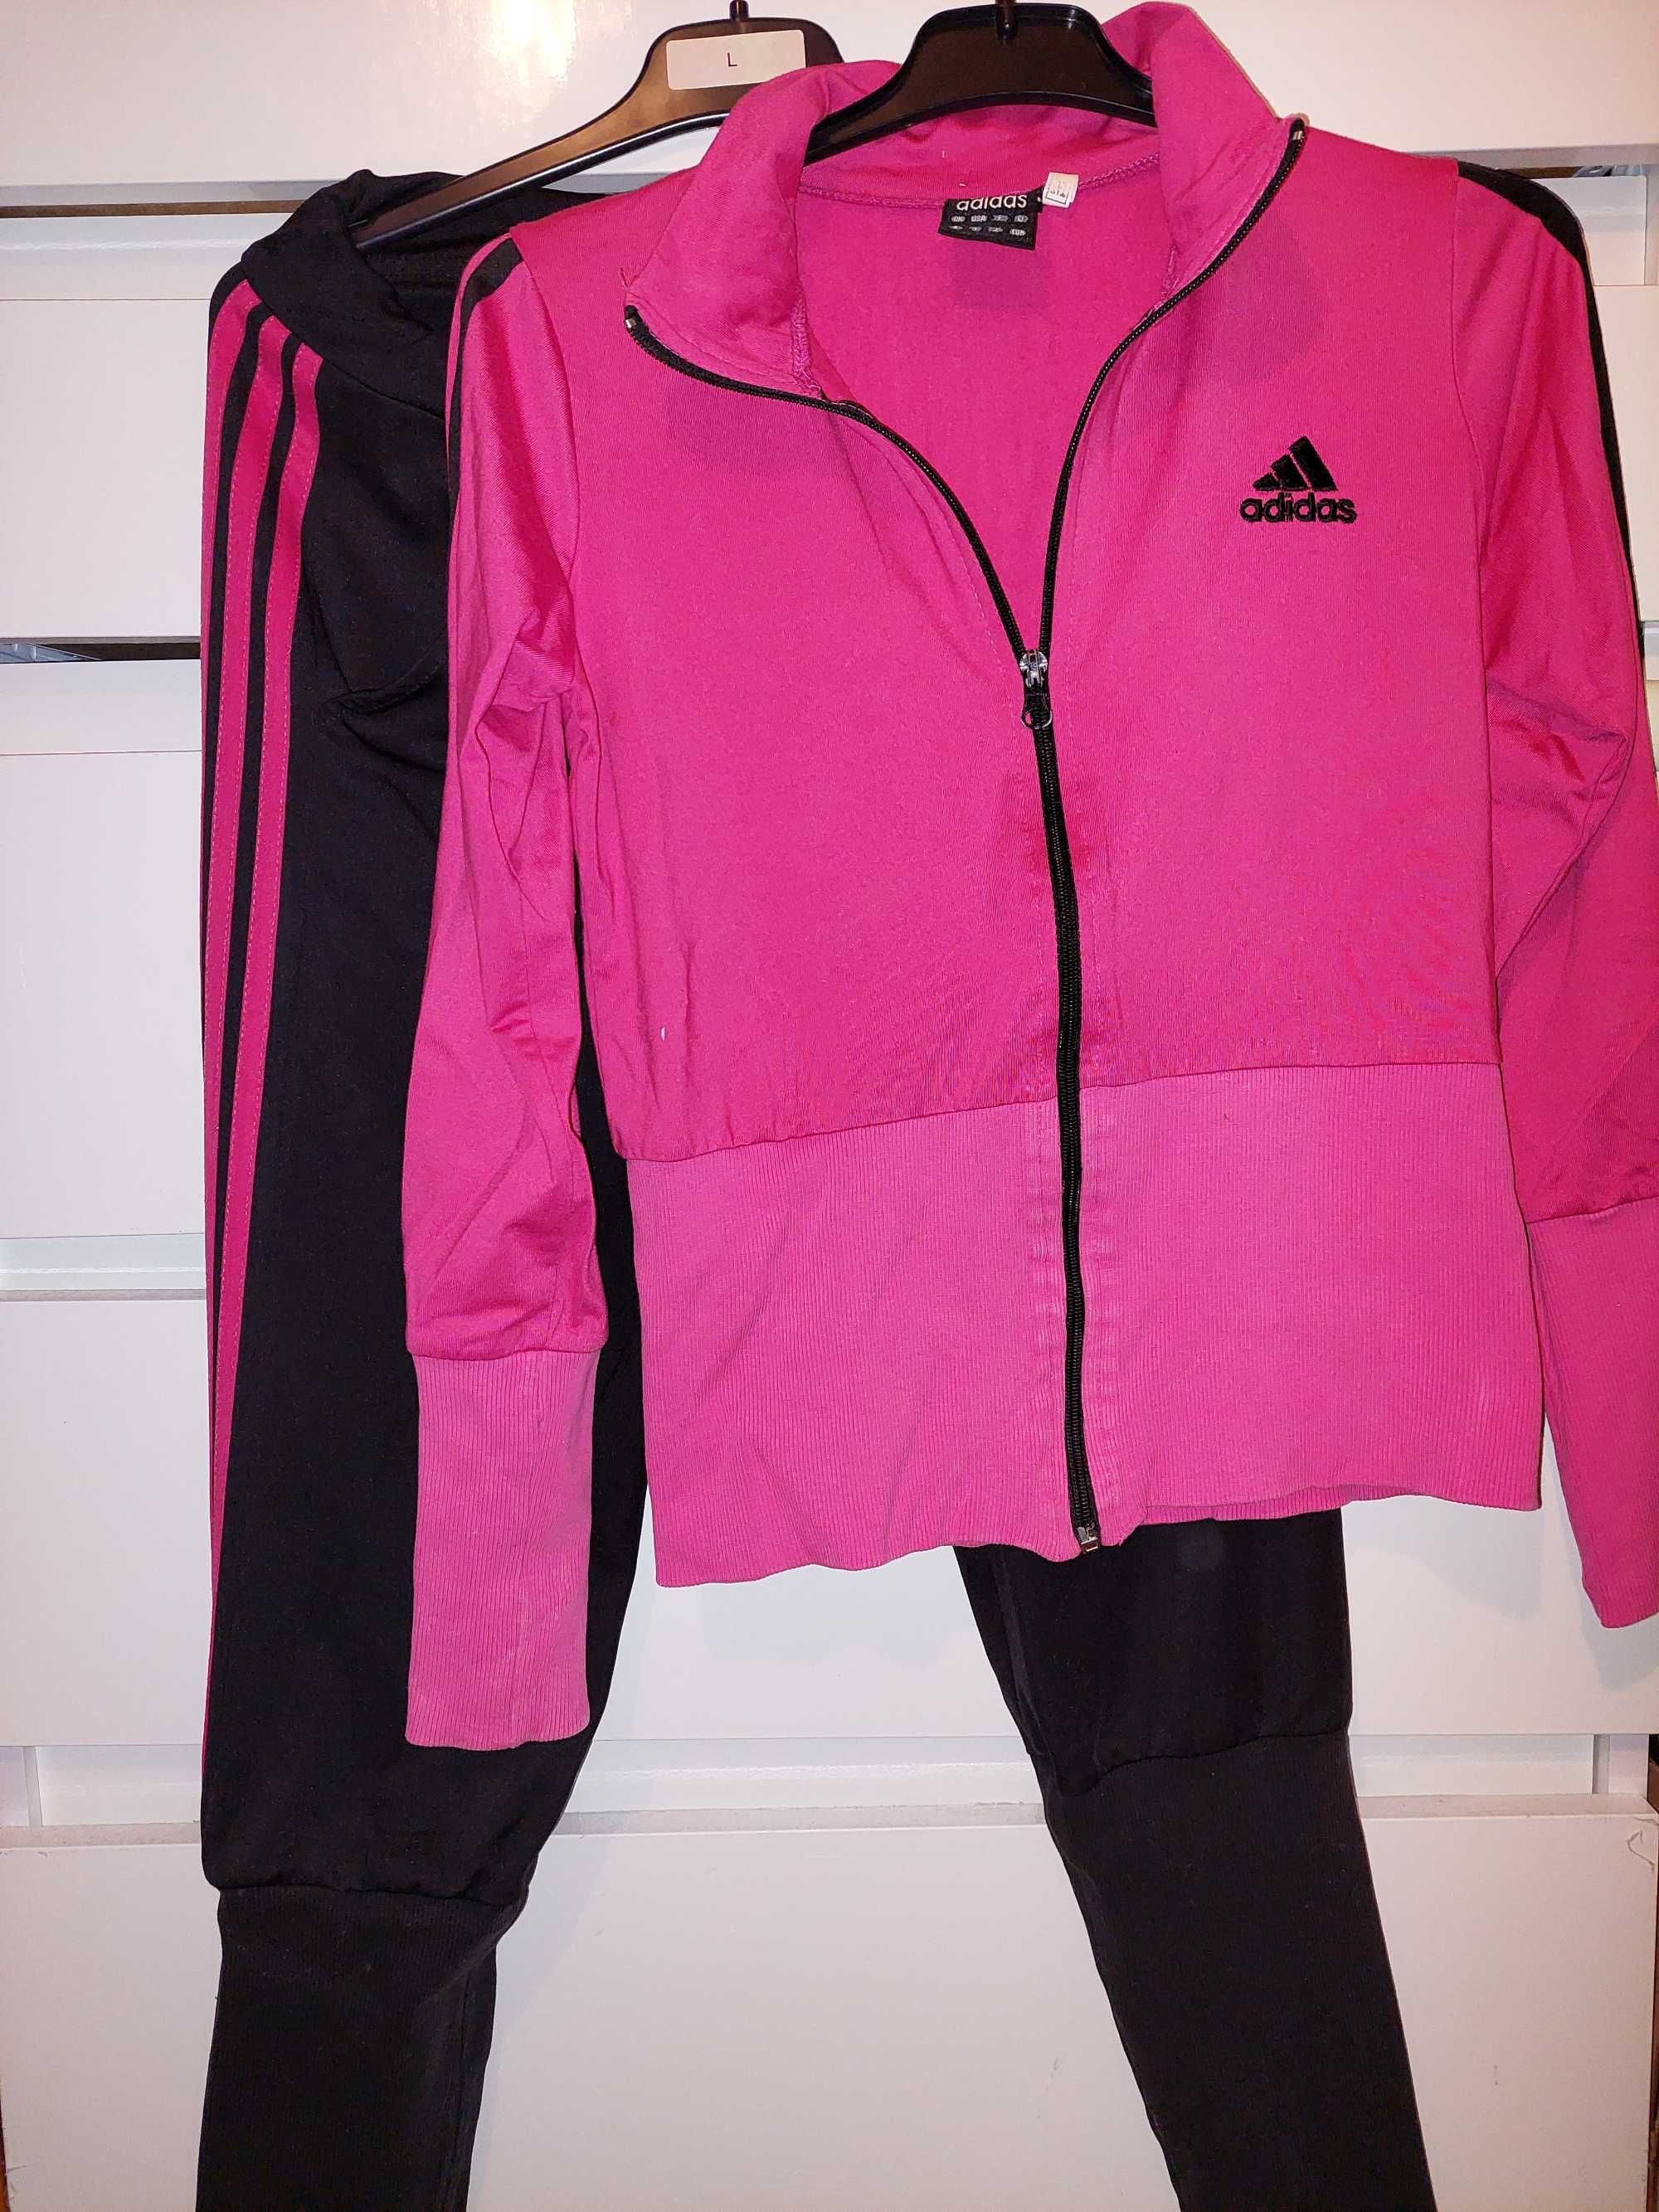 Trening roz/negru Adidas/costum sport/casa TRANSPORT GRATUIT